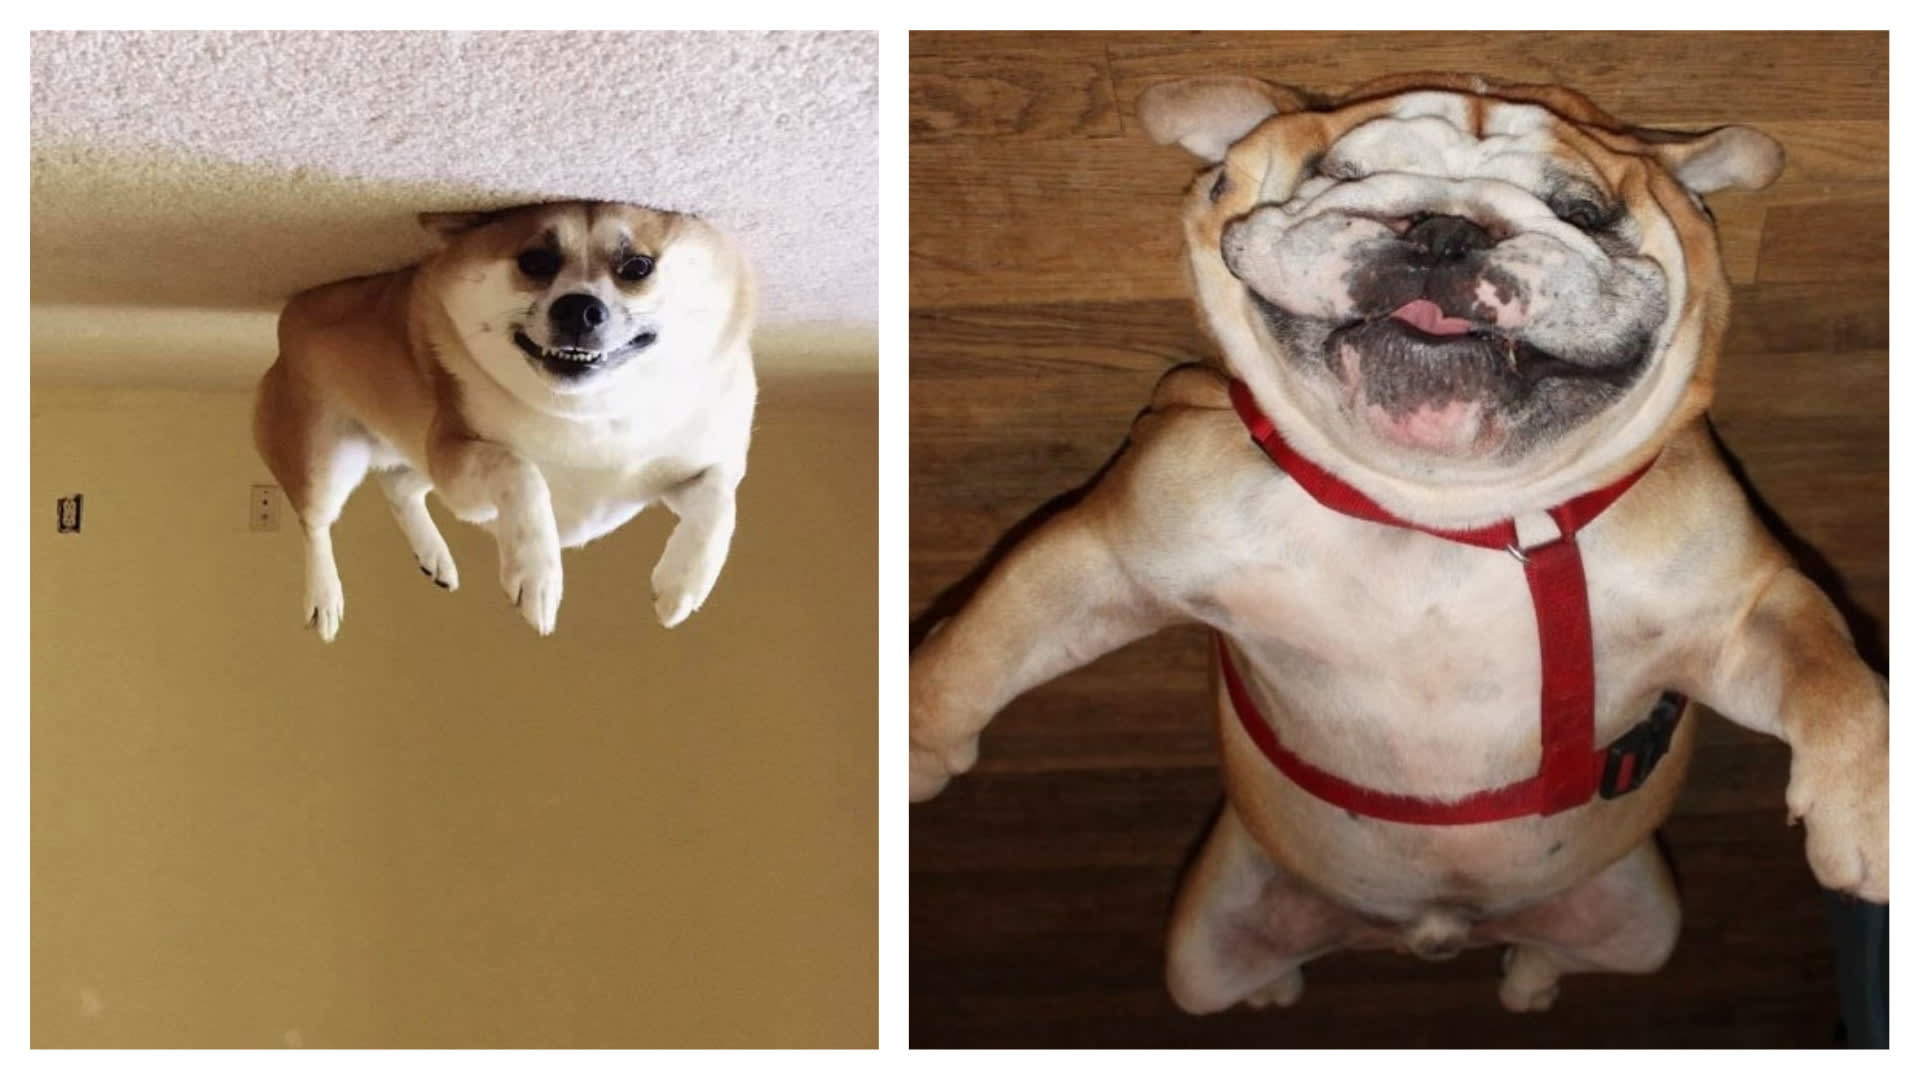 Tihle psi jsou prostě top strop!